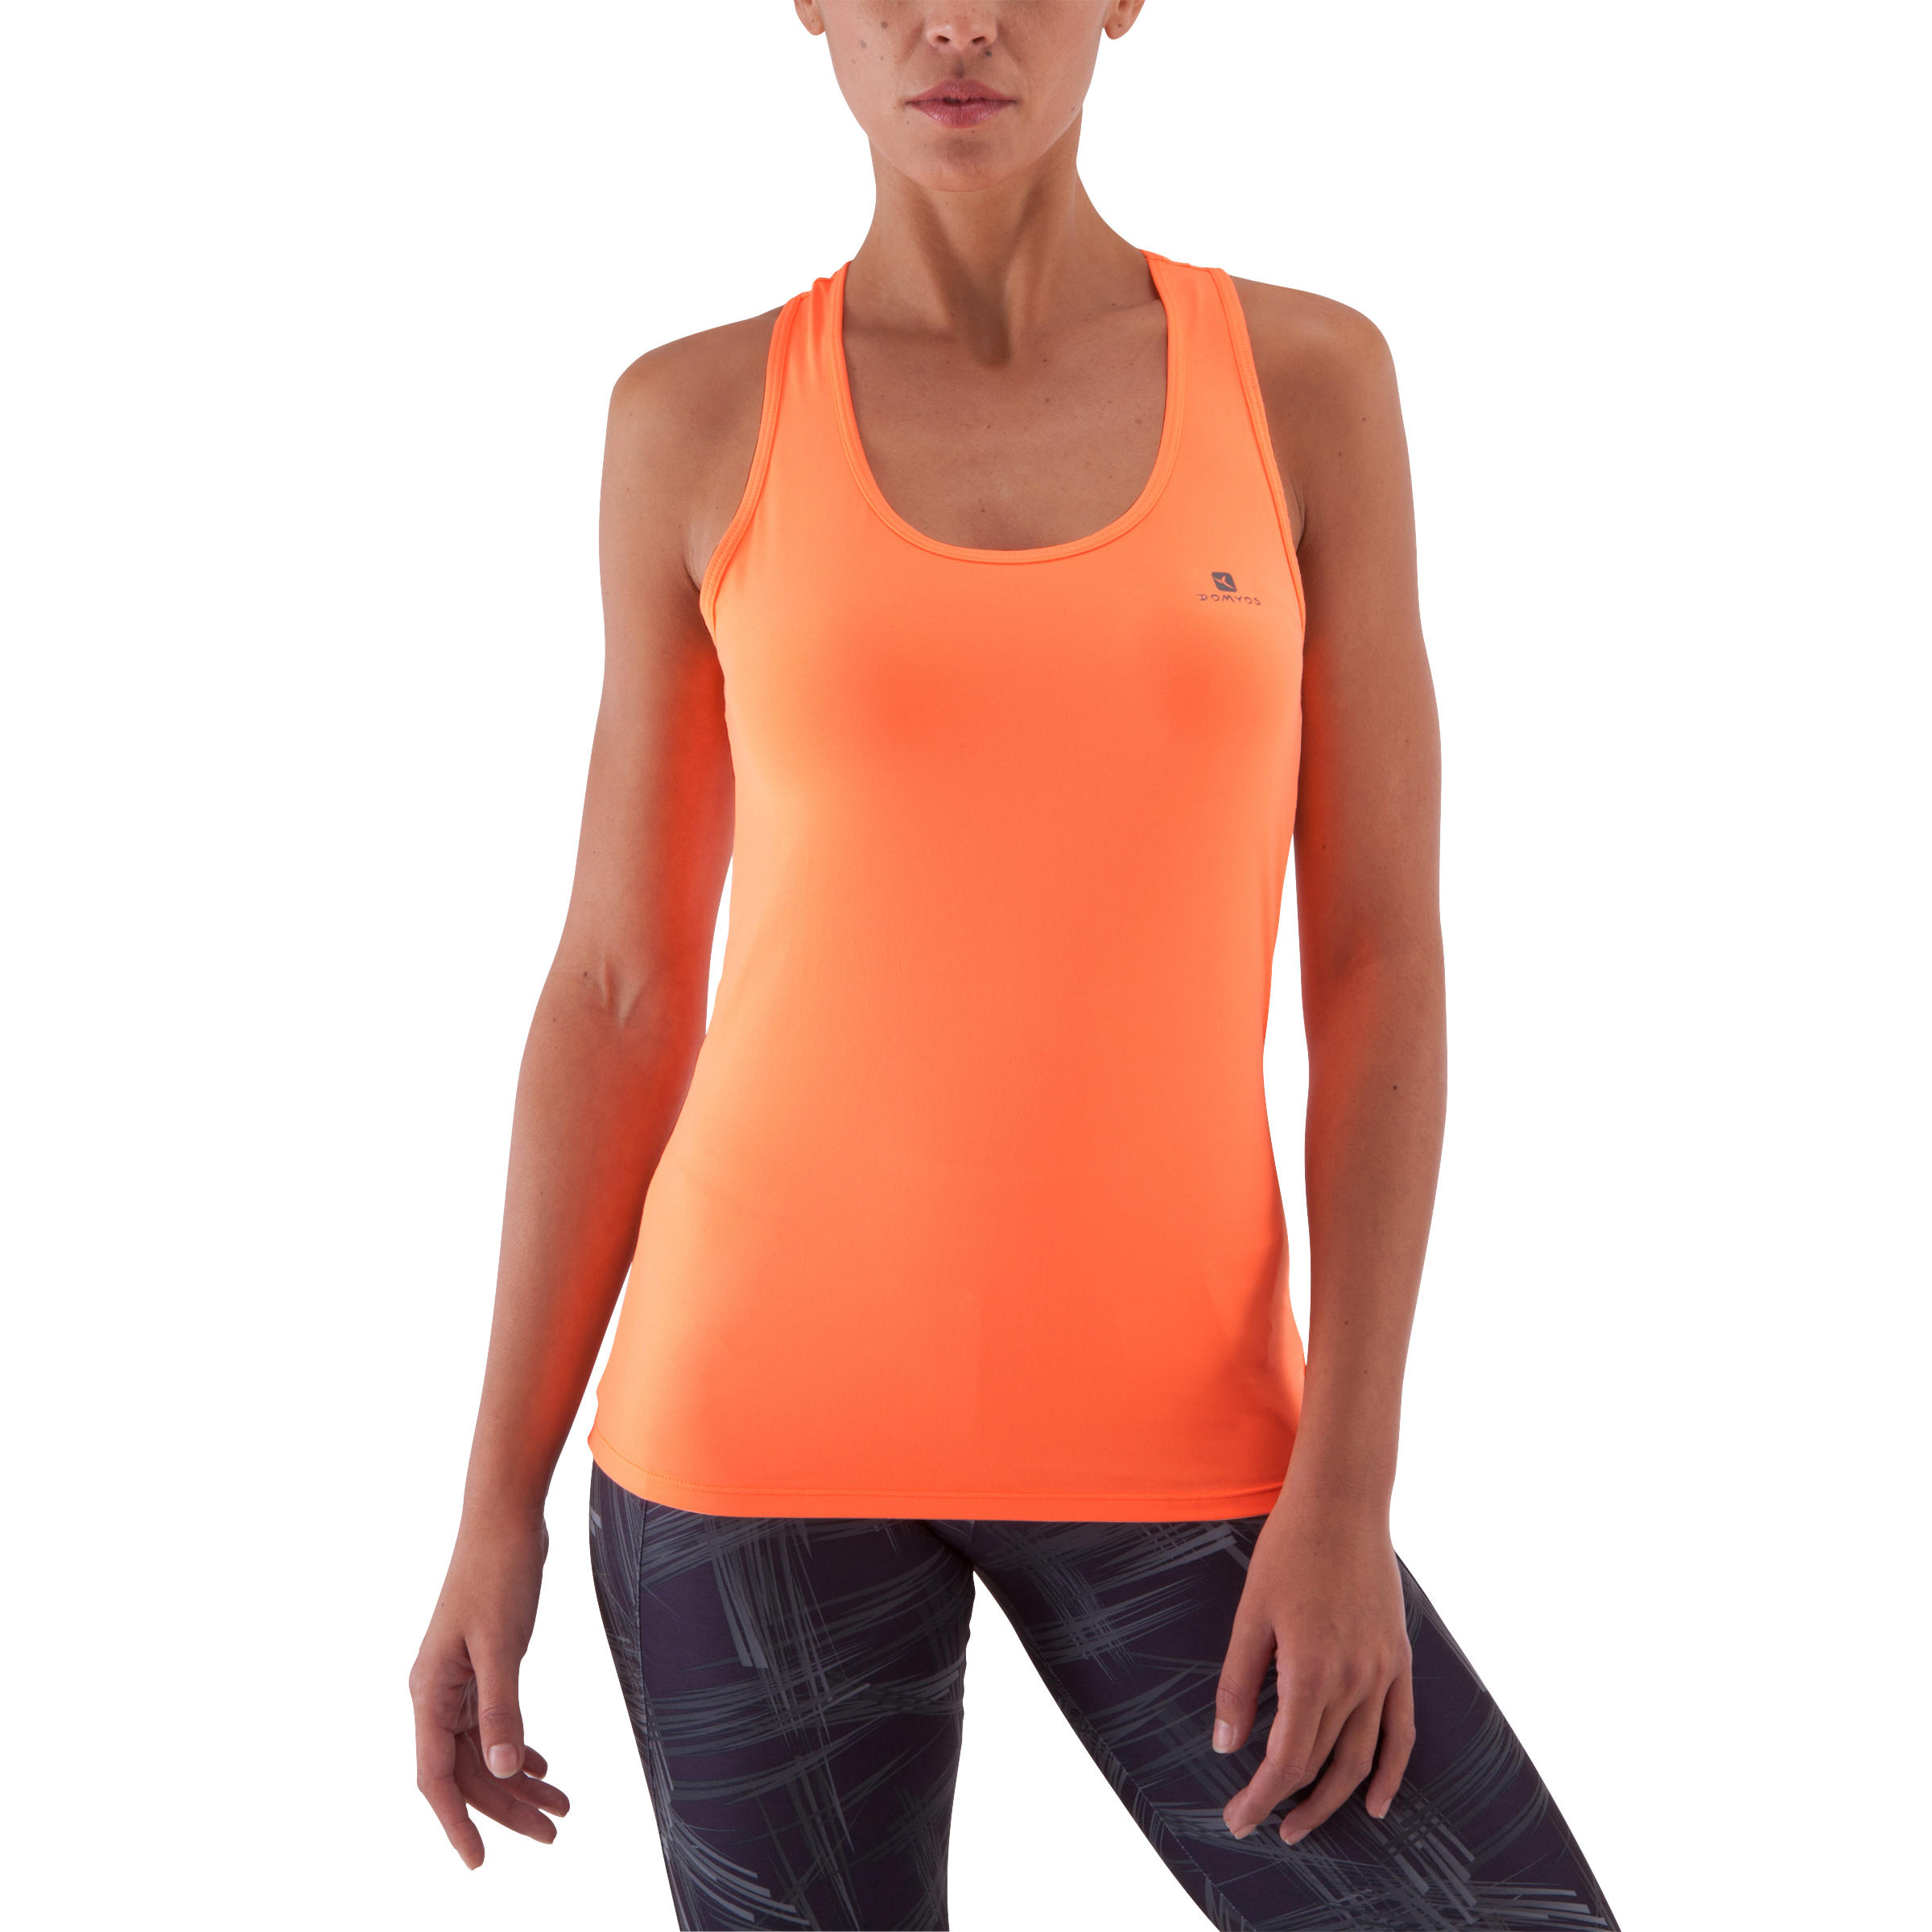 Energy My Top Women's Fitness Tank Top - Neon Orange 2/13